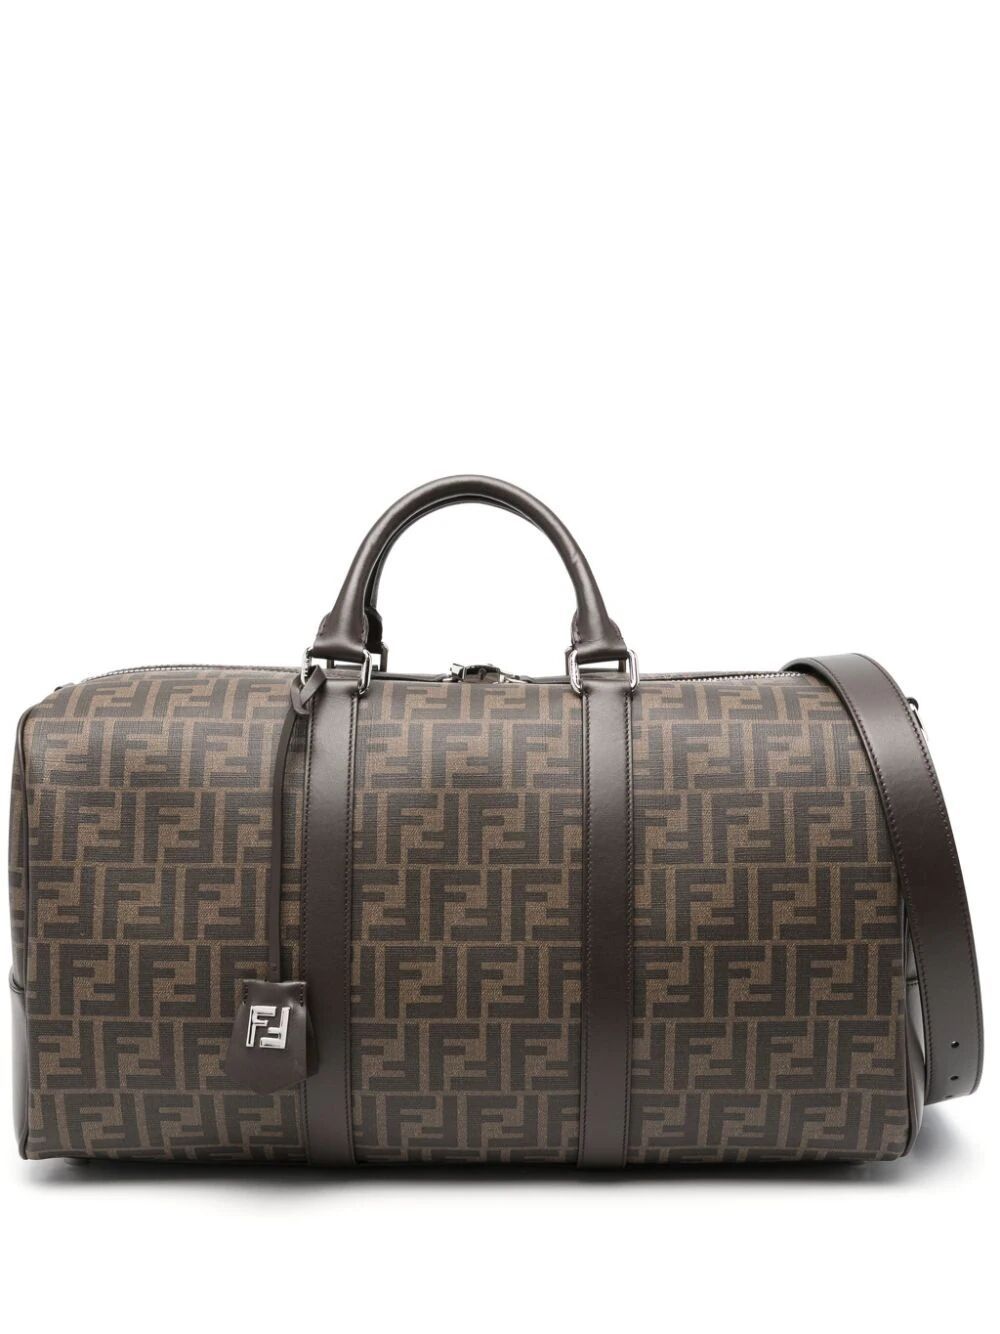 Shop Fendi Brown Ff Patterned Men's Travel Handbag With Leather Trim And Adjustable Strap